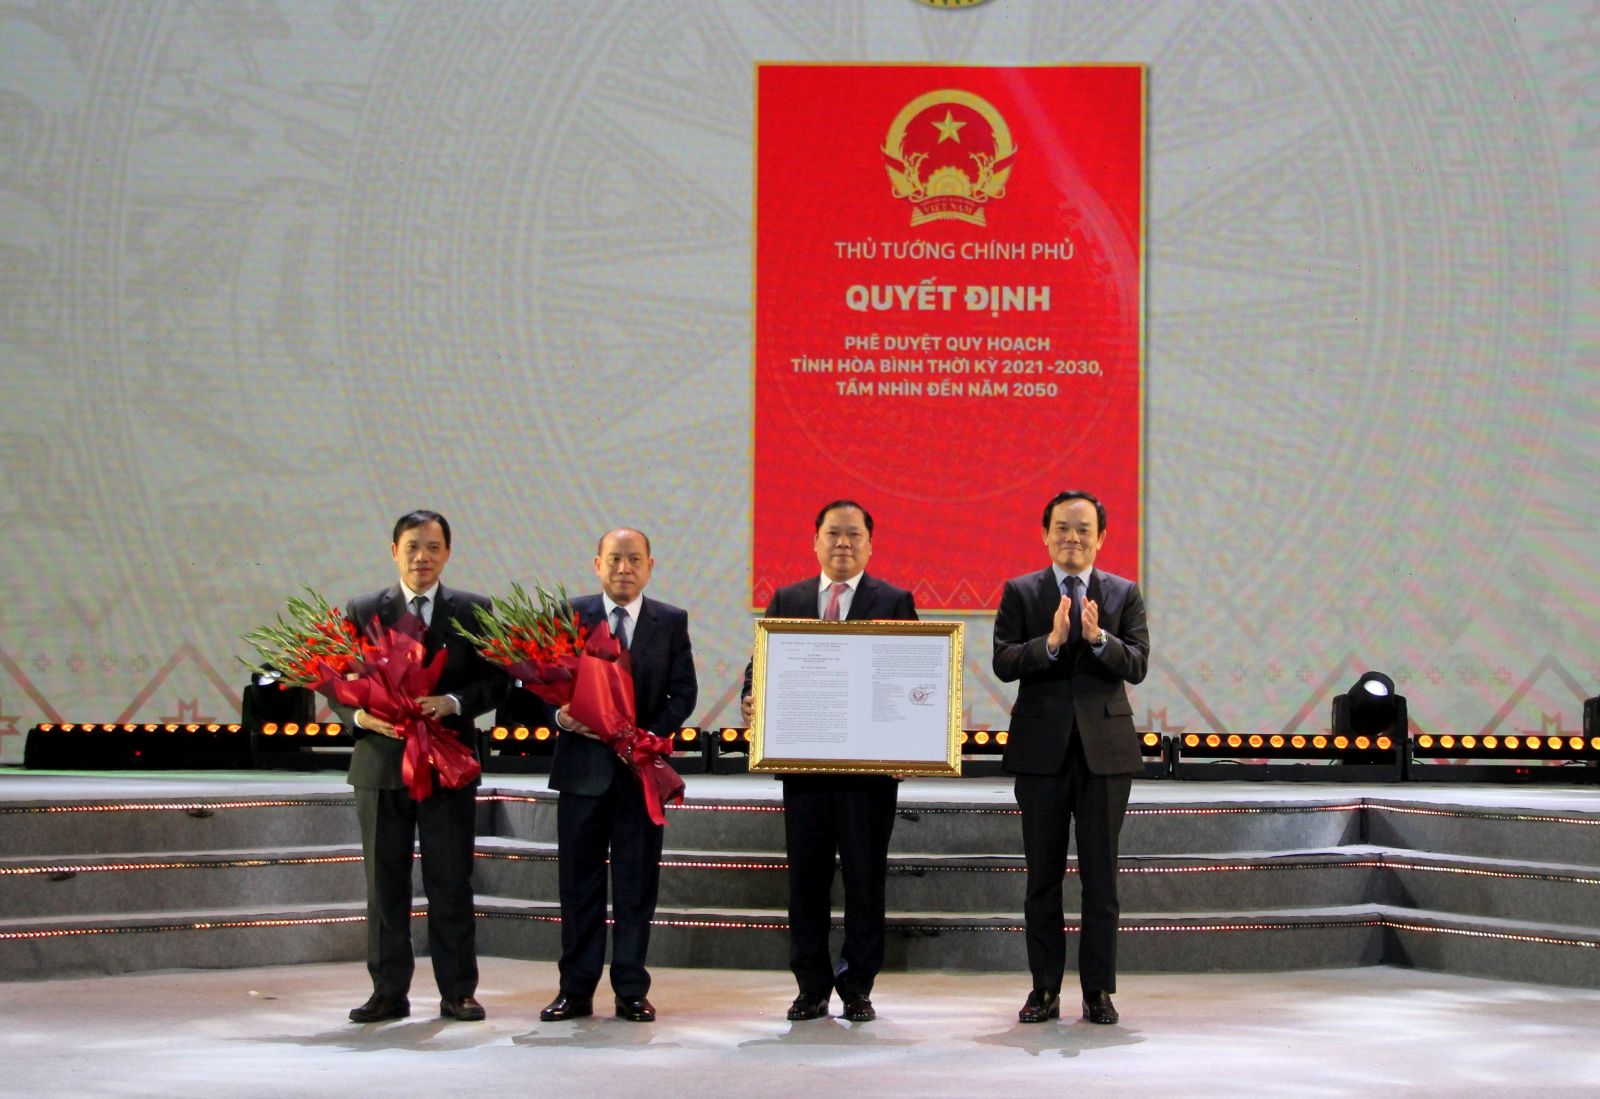 Phó Thủ tướng Chính phủ Trần Lưu Quang trao Quyết định Phê duyệt Quy hoạch tỉnh Hòa Bình thời kỳ 2021 - 2030, tầm nhìn đến năm 2050